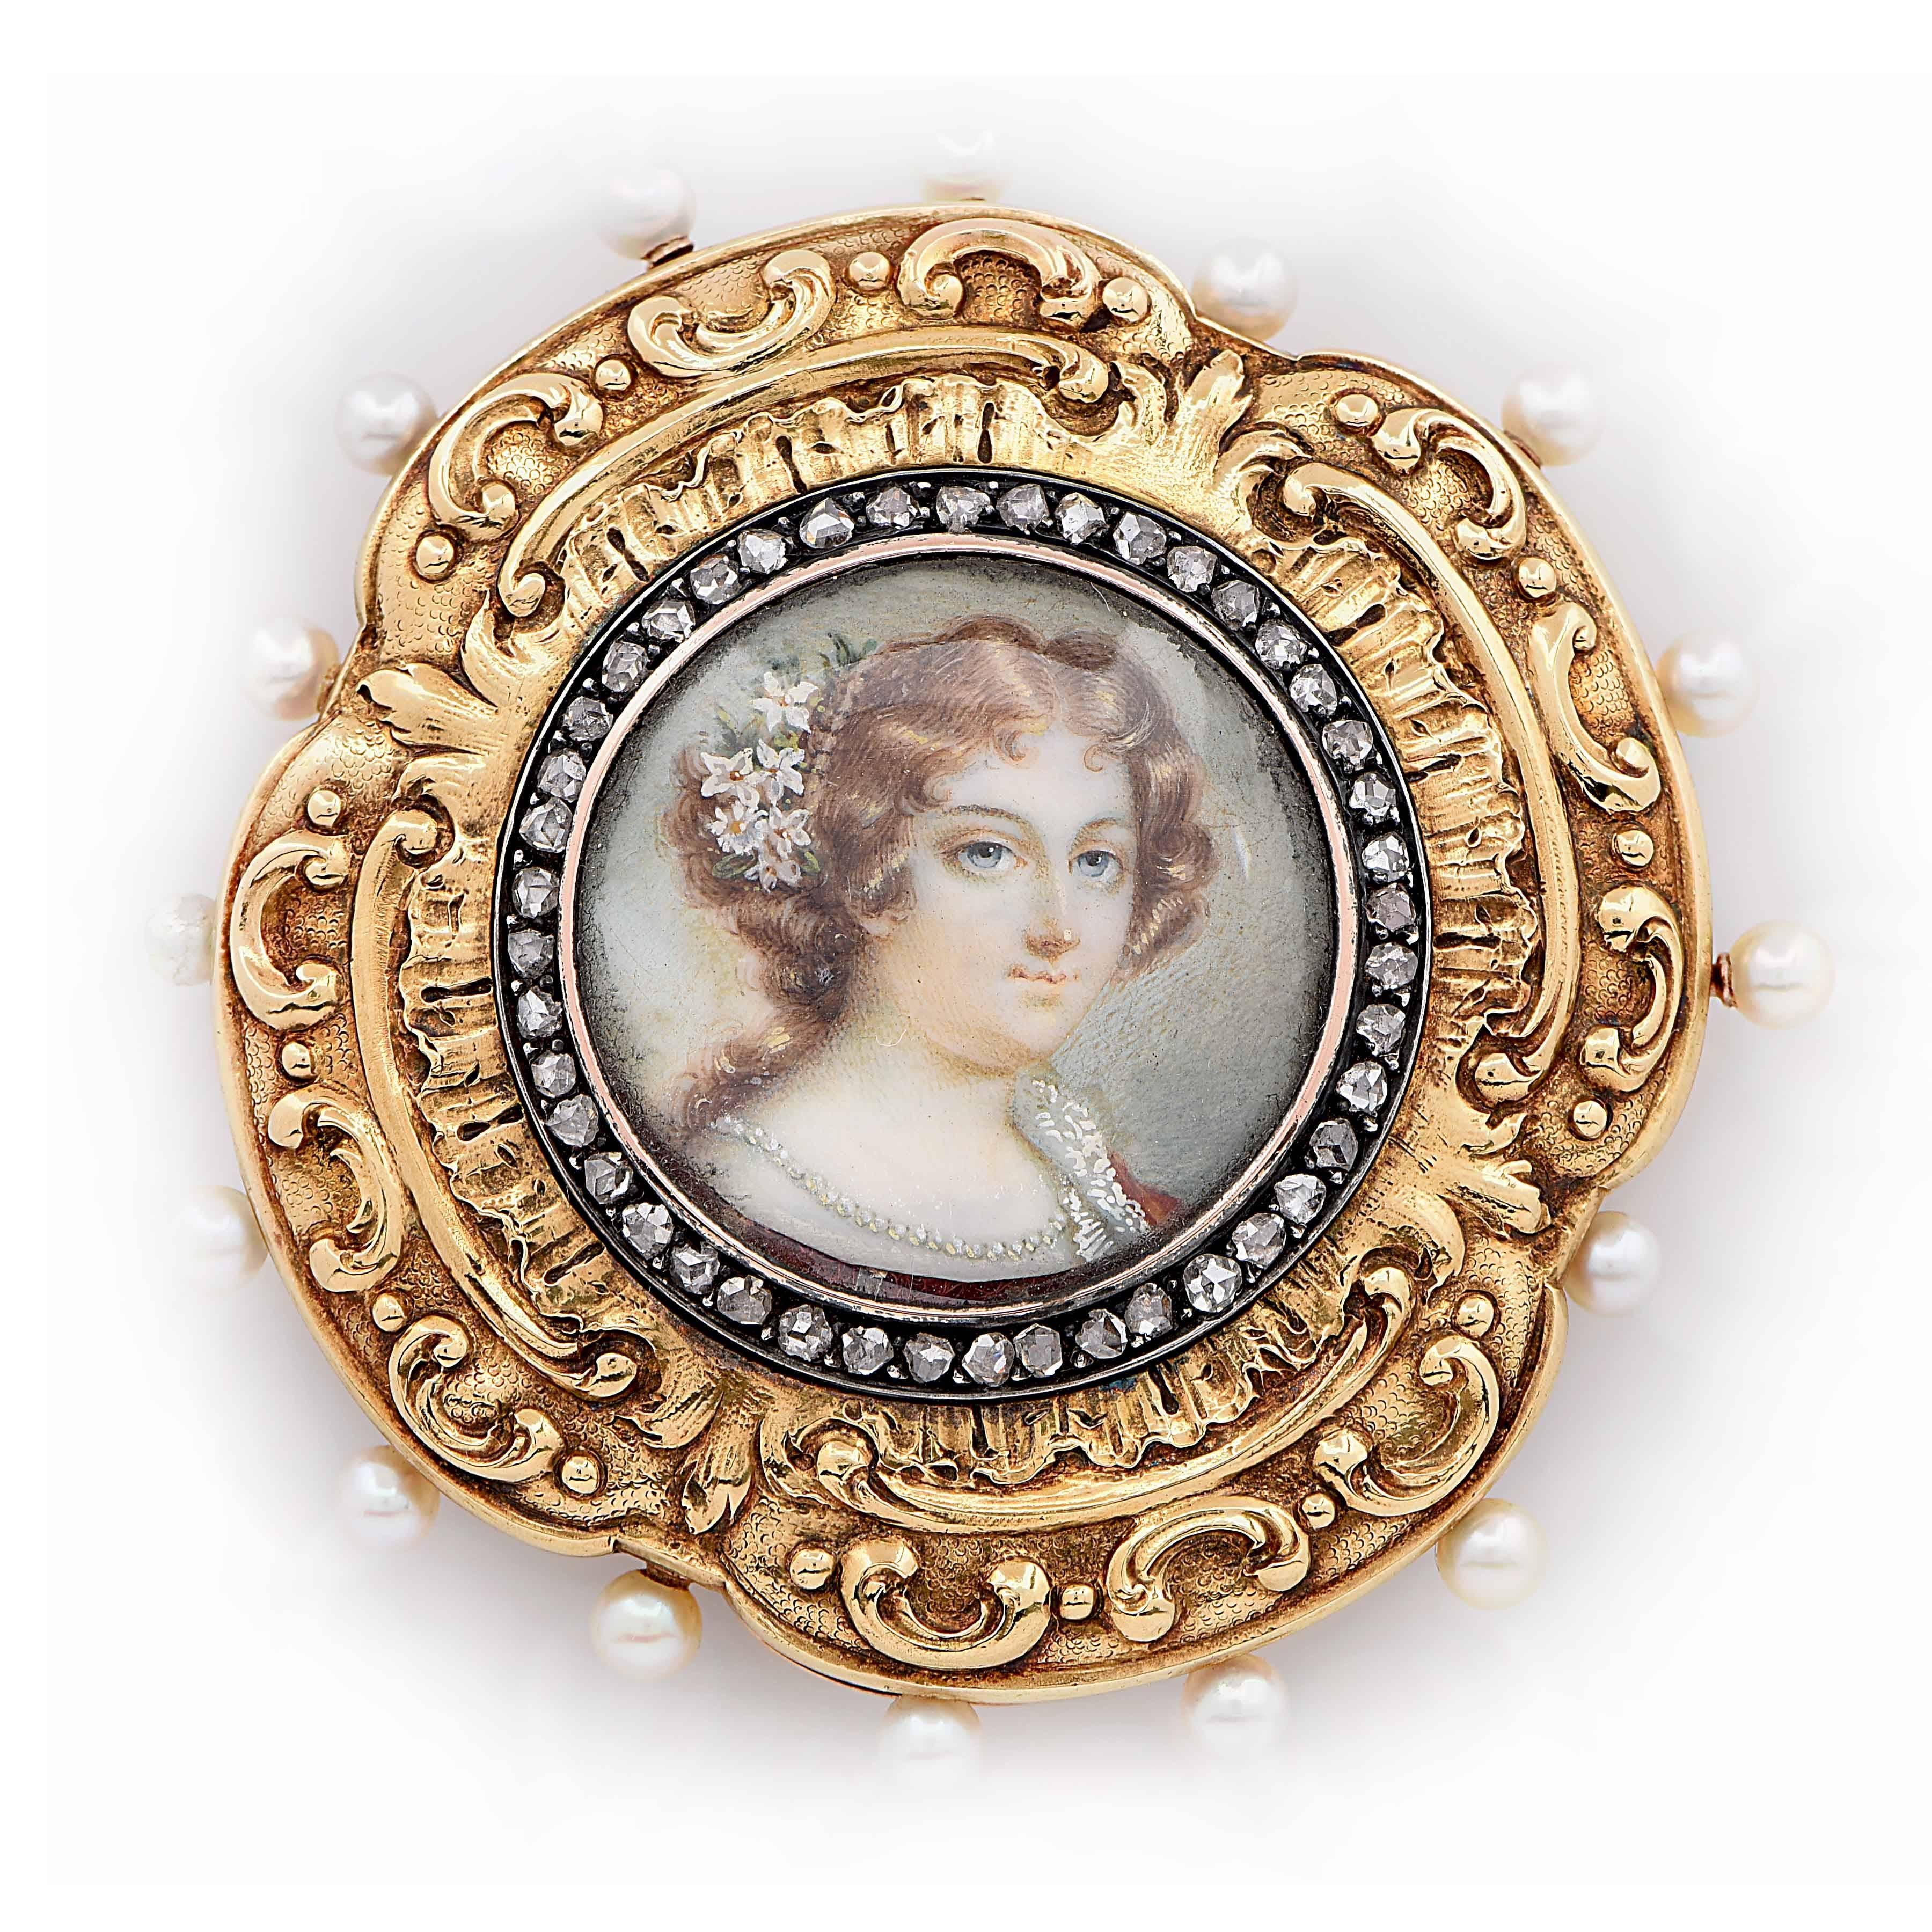 Das Miniaturporträt einer jungen Dame steht im Mittelpunkt dieses einzigartigen goldenen Nadelkissens